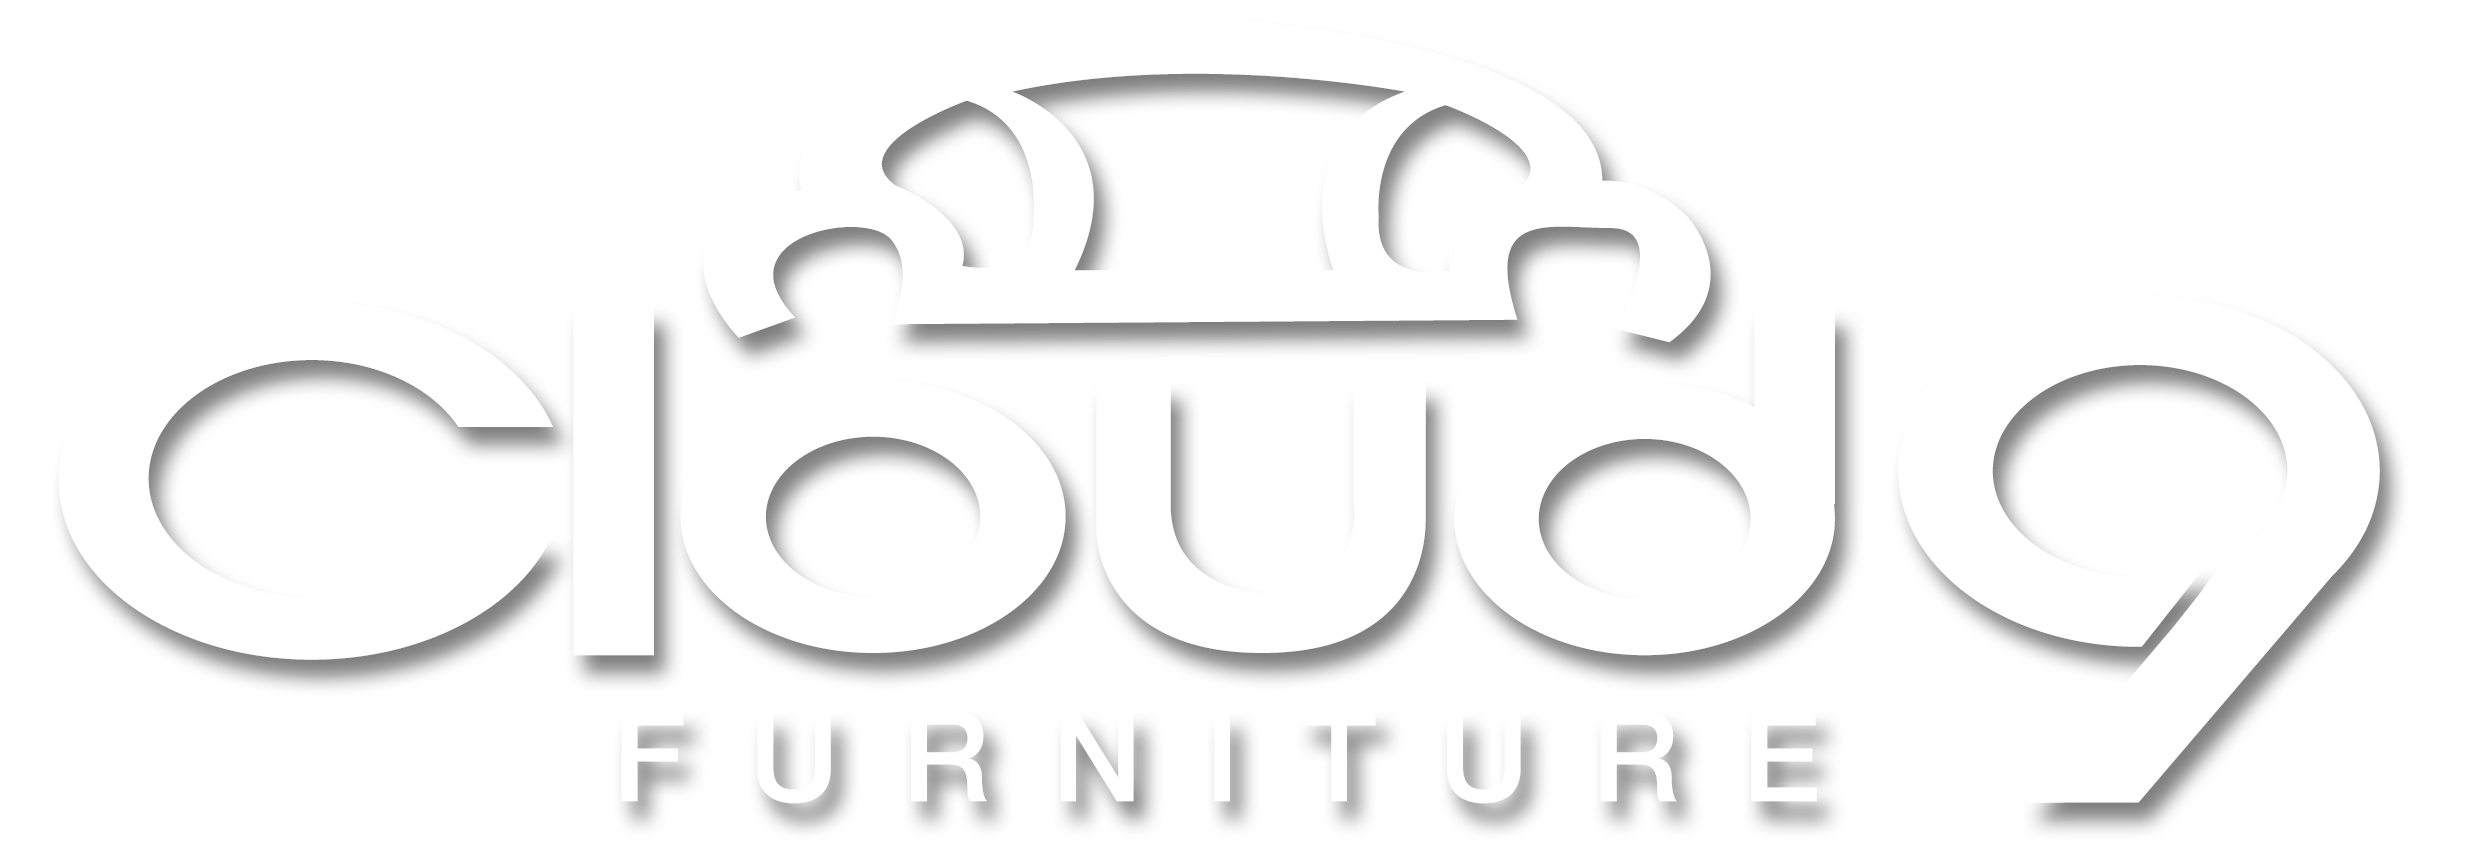 Cloud 9 Furniture logo